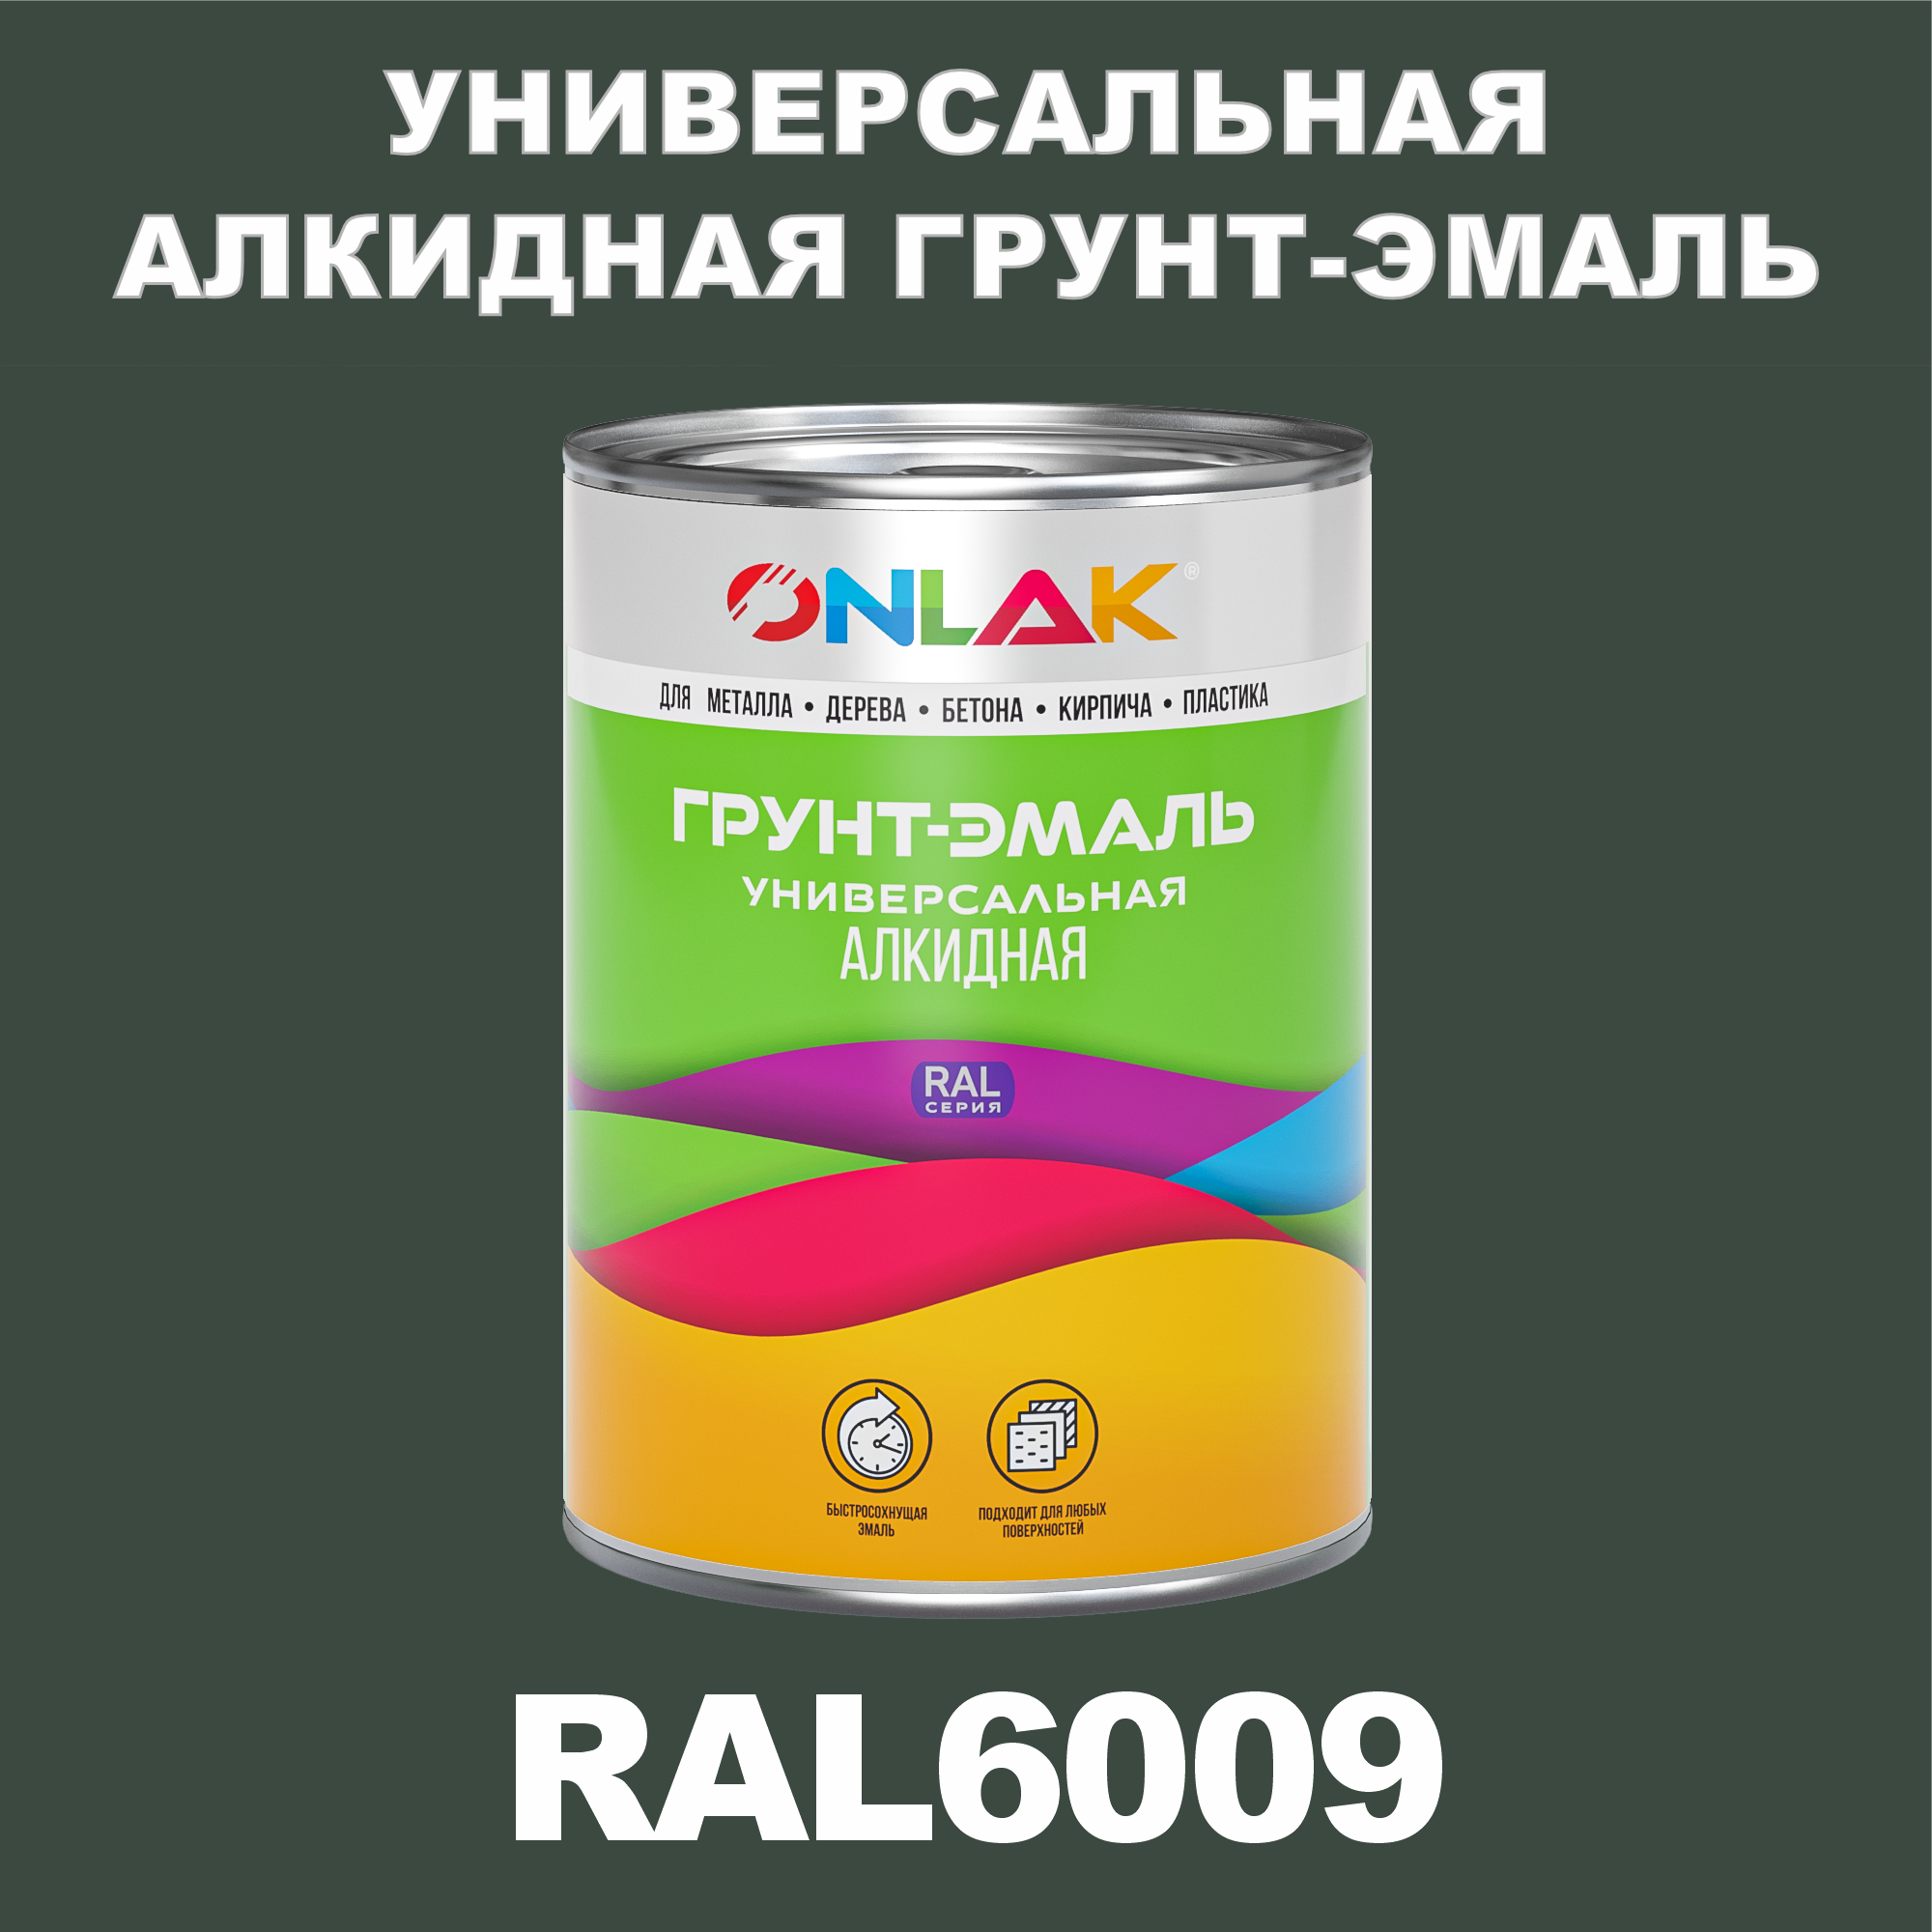 Грунт-эмаль ONLAK 1К RAL6009 антикоррозионная алкидная по металлу по ржавчине 1 кг грунт эмаль yollo по ржавчине алкидная серая 0 9 кг